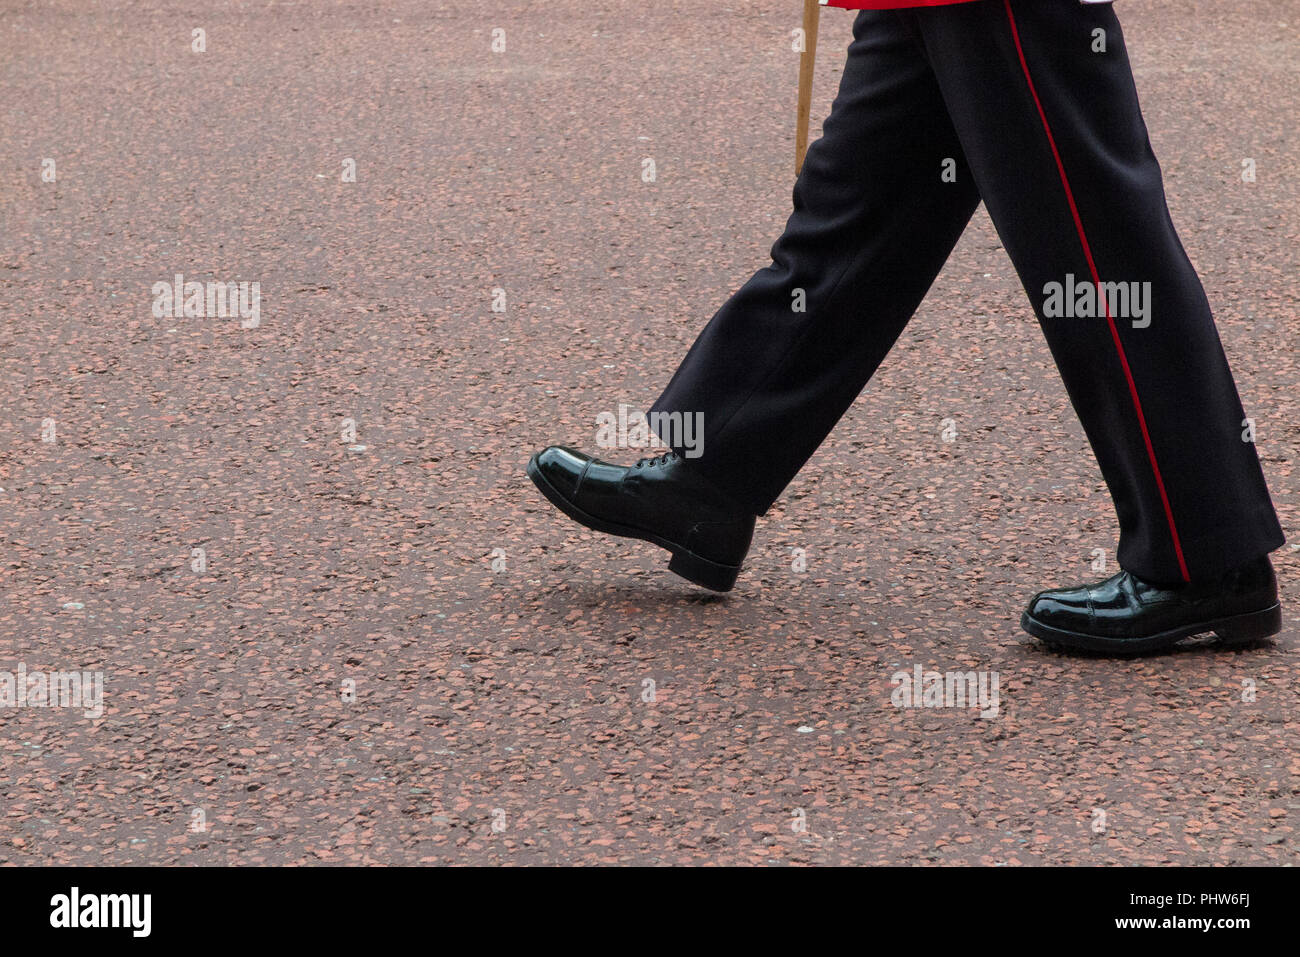 Un ufficiali gambe e stivali lucido portano una banda militare sul Mall a Londra Foto Stock